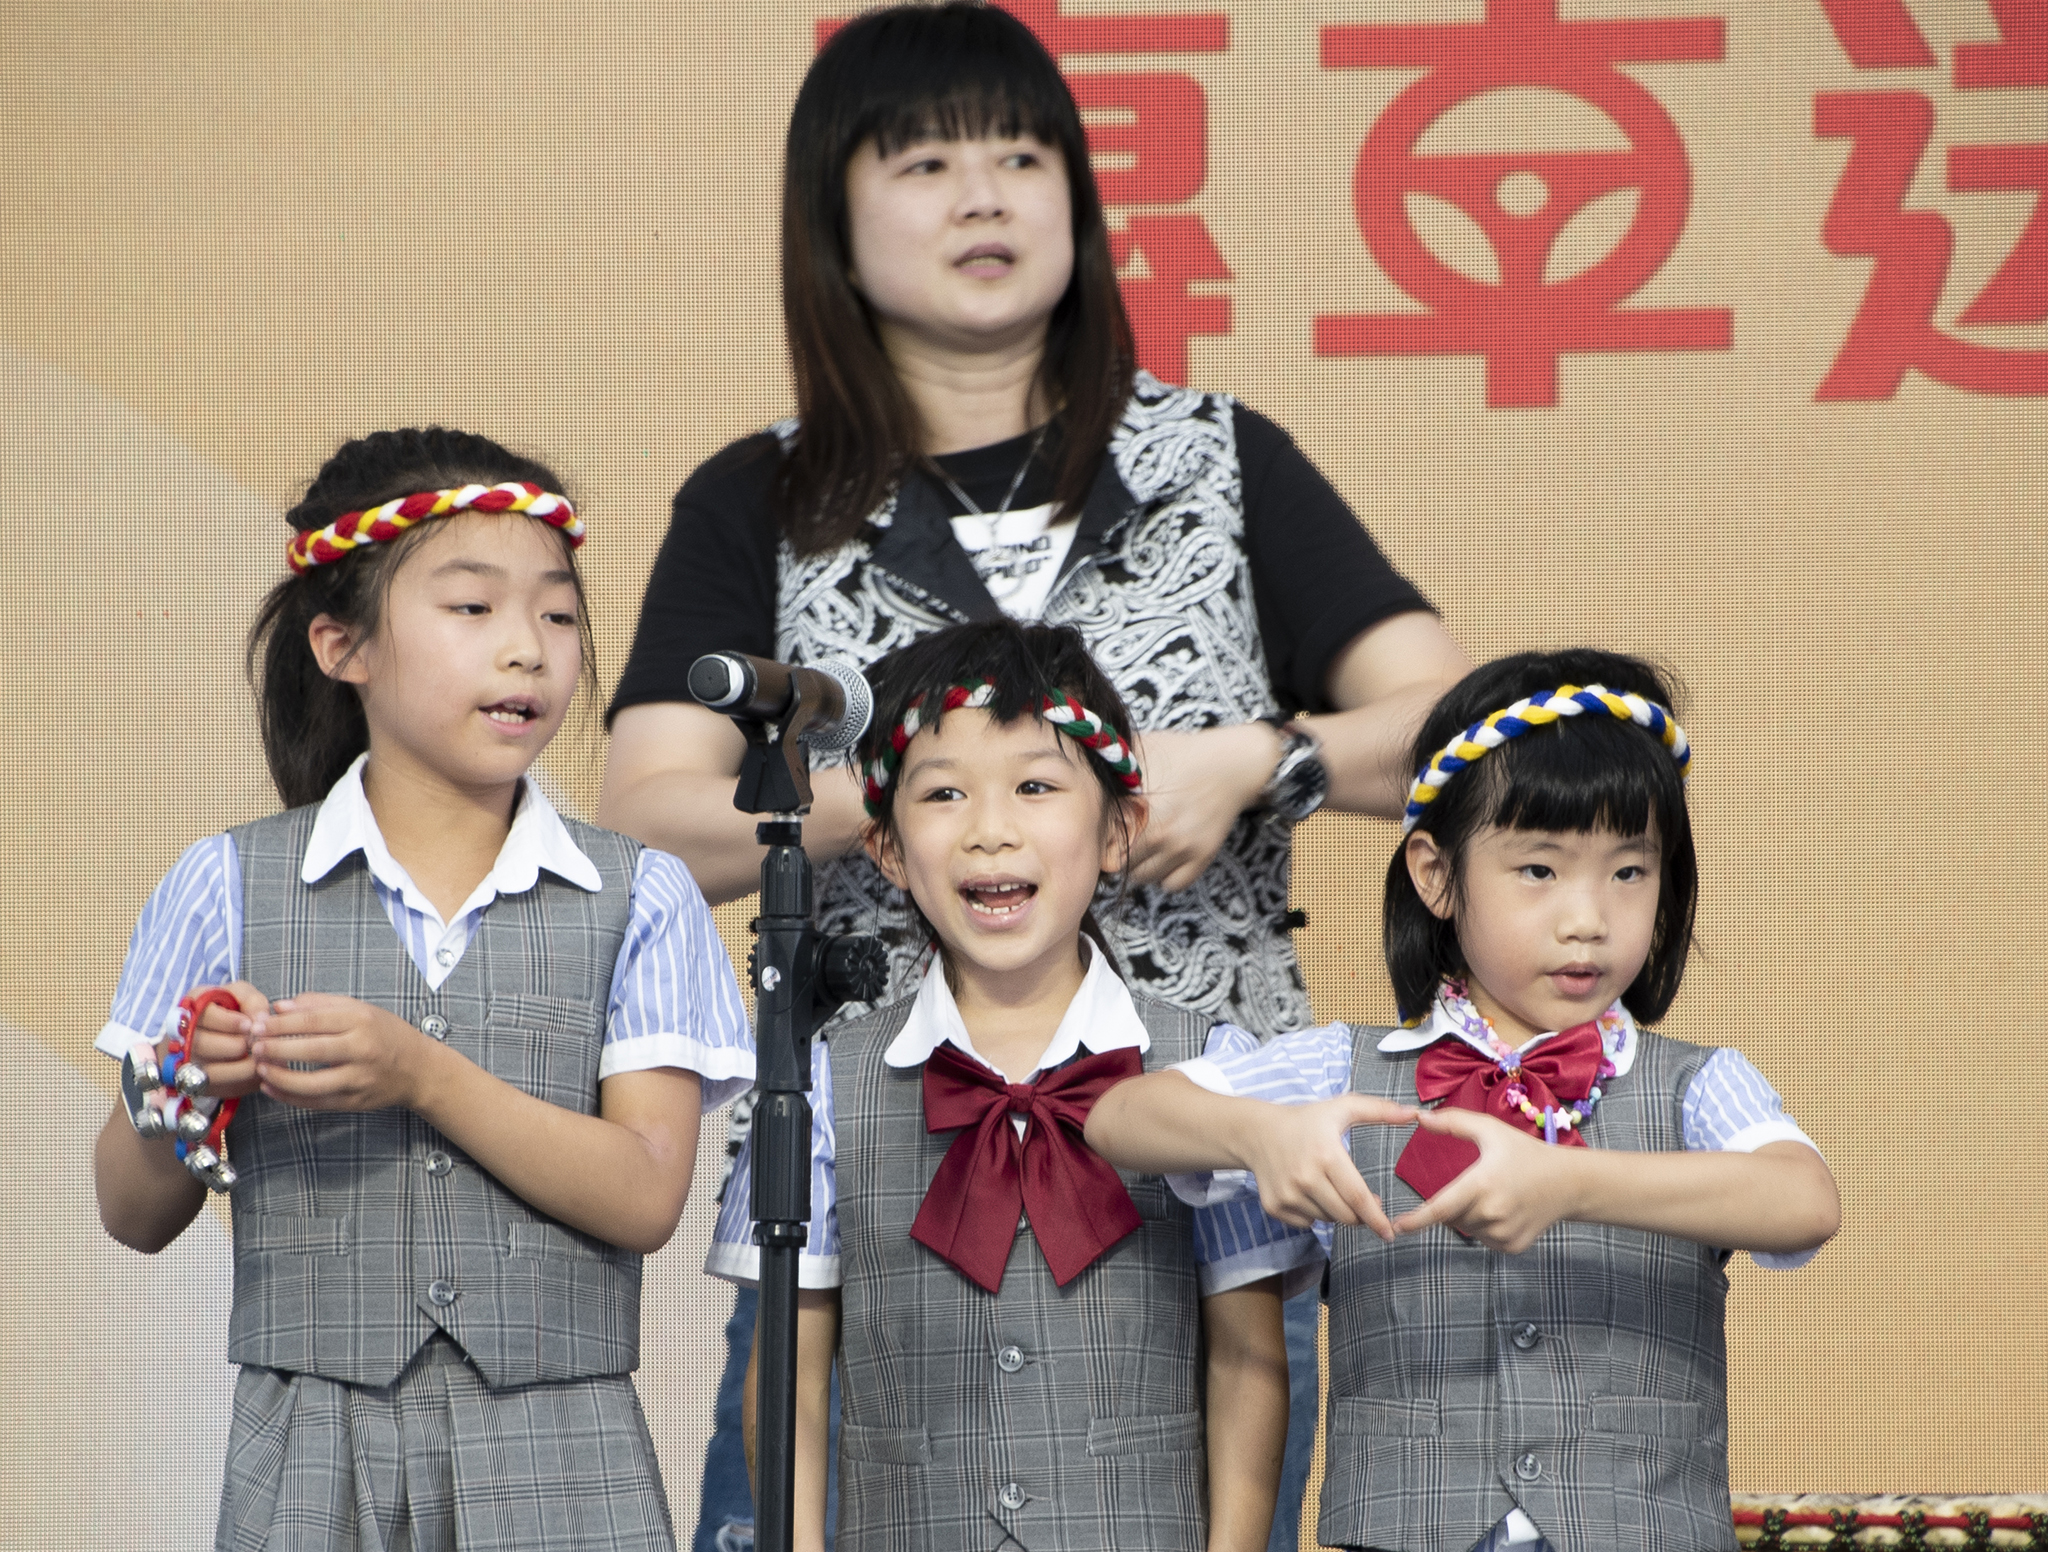 開場表演由台北兒童合唱團帶來原住民歌曲。